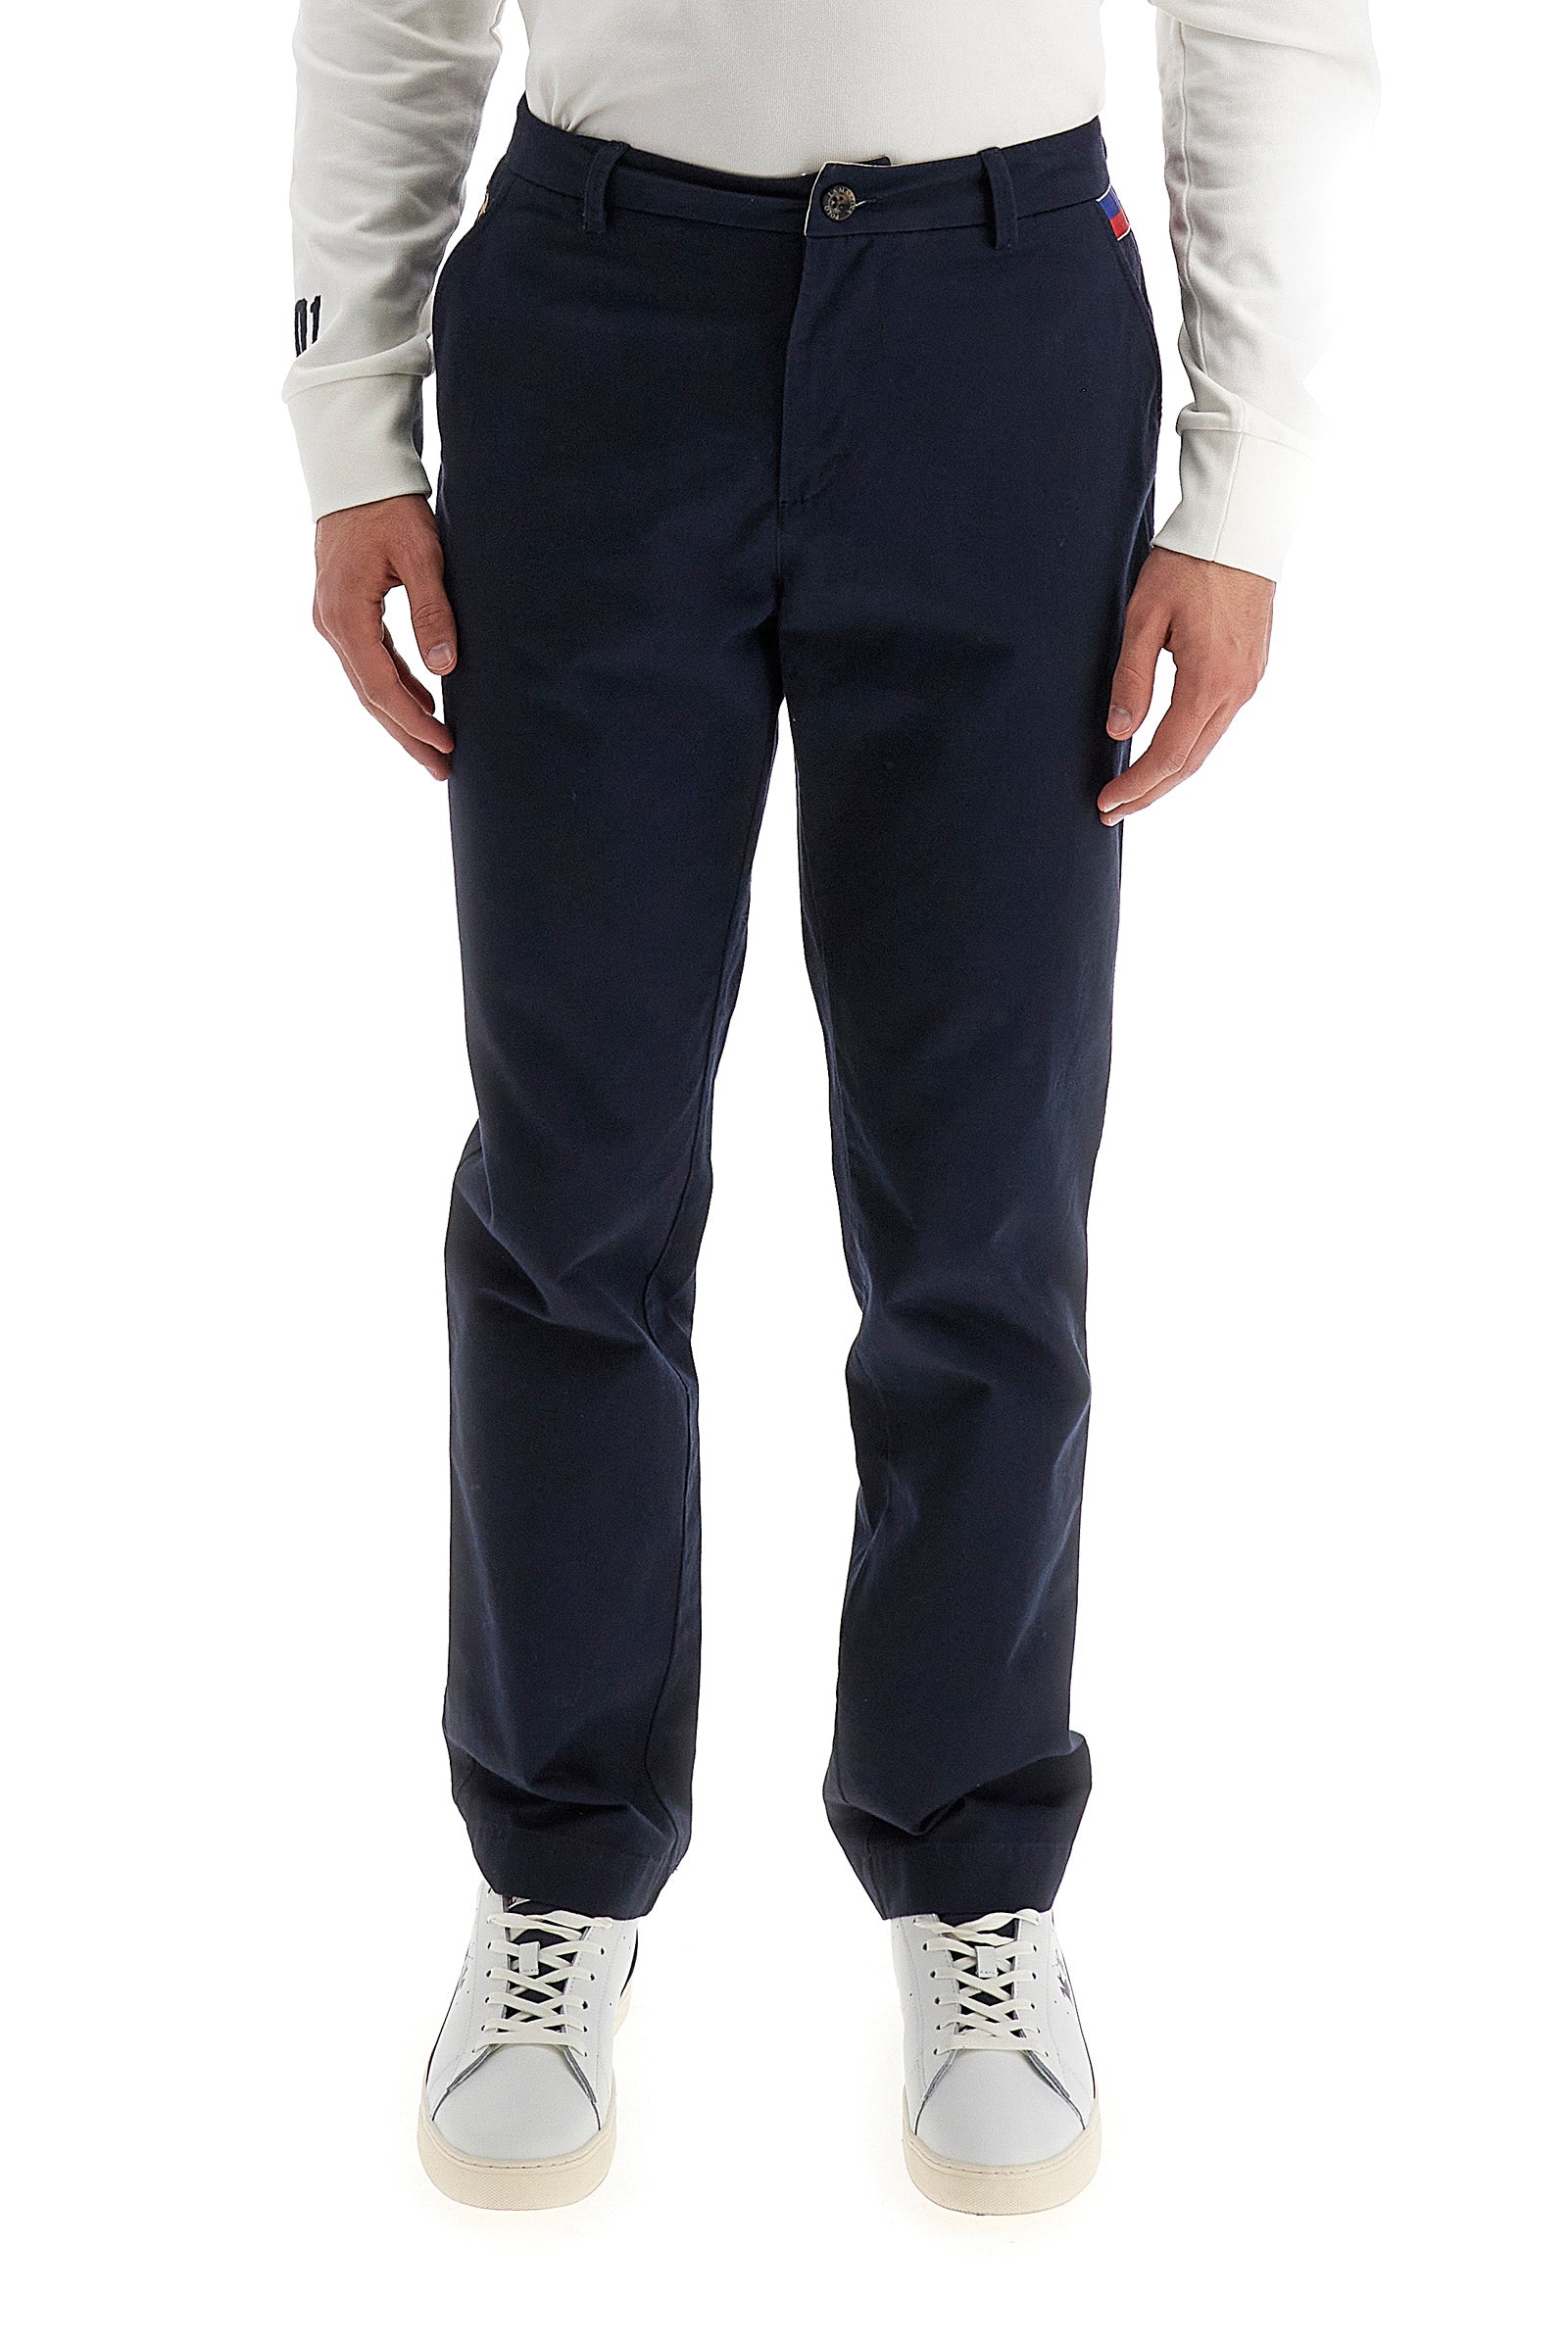 Pantaloni chino uomo regular fit - Wernher - Navy